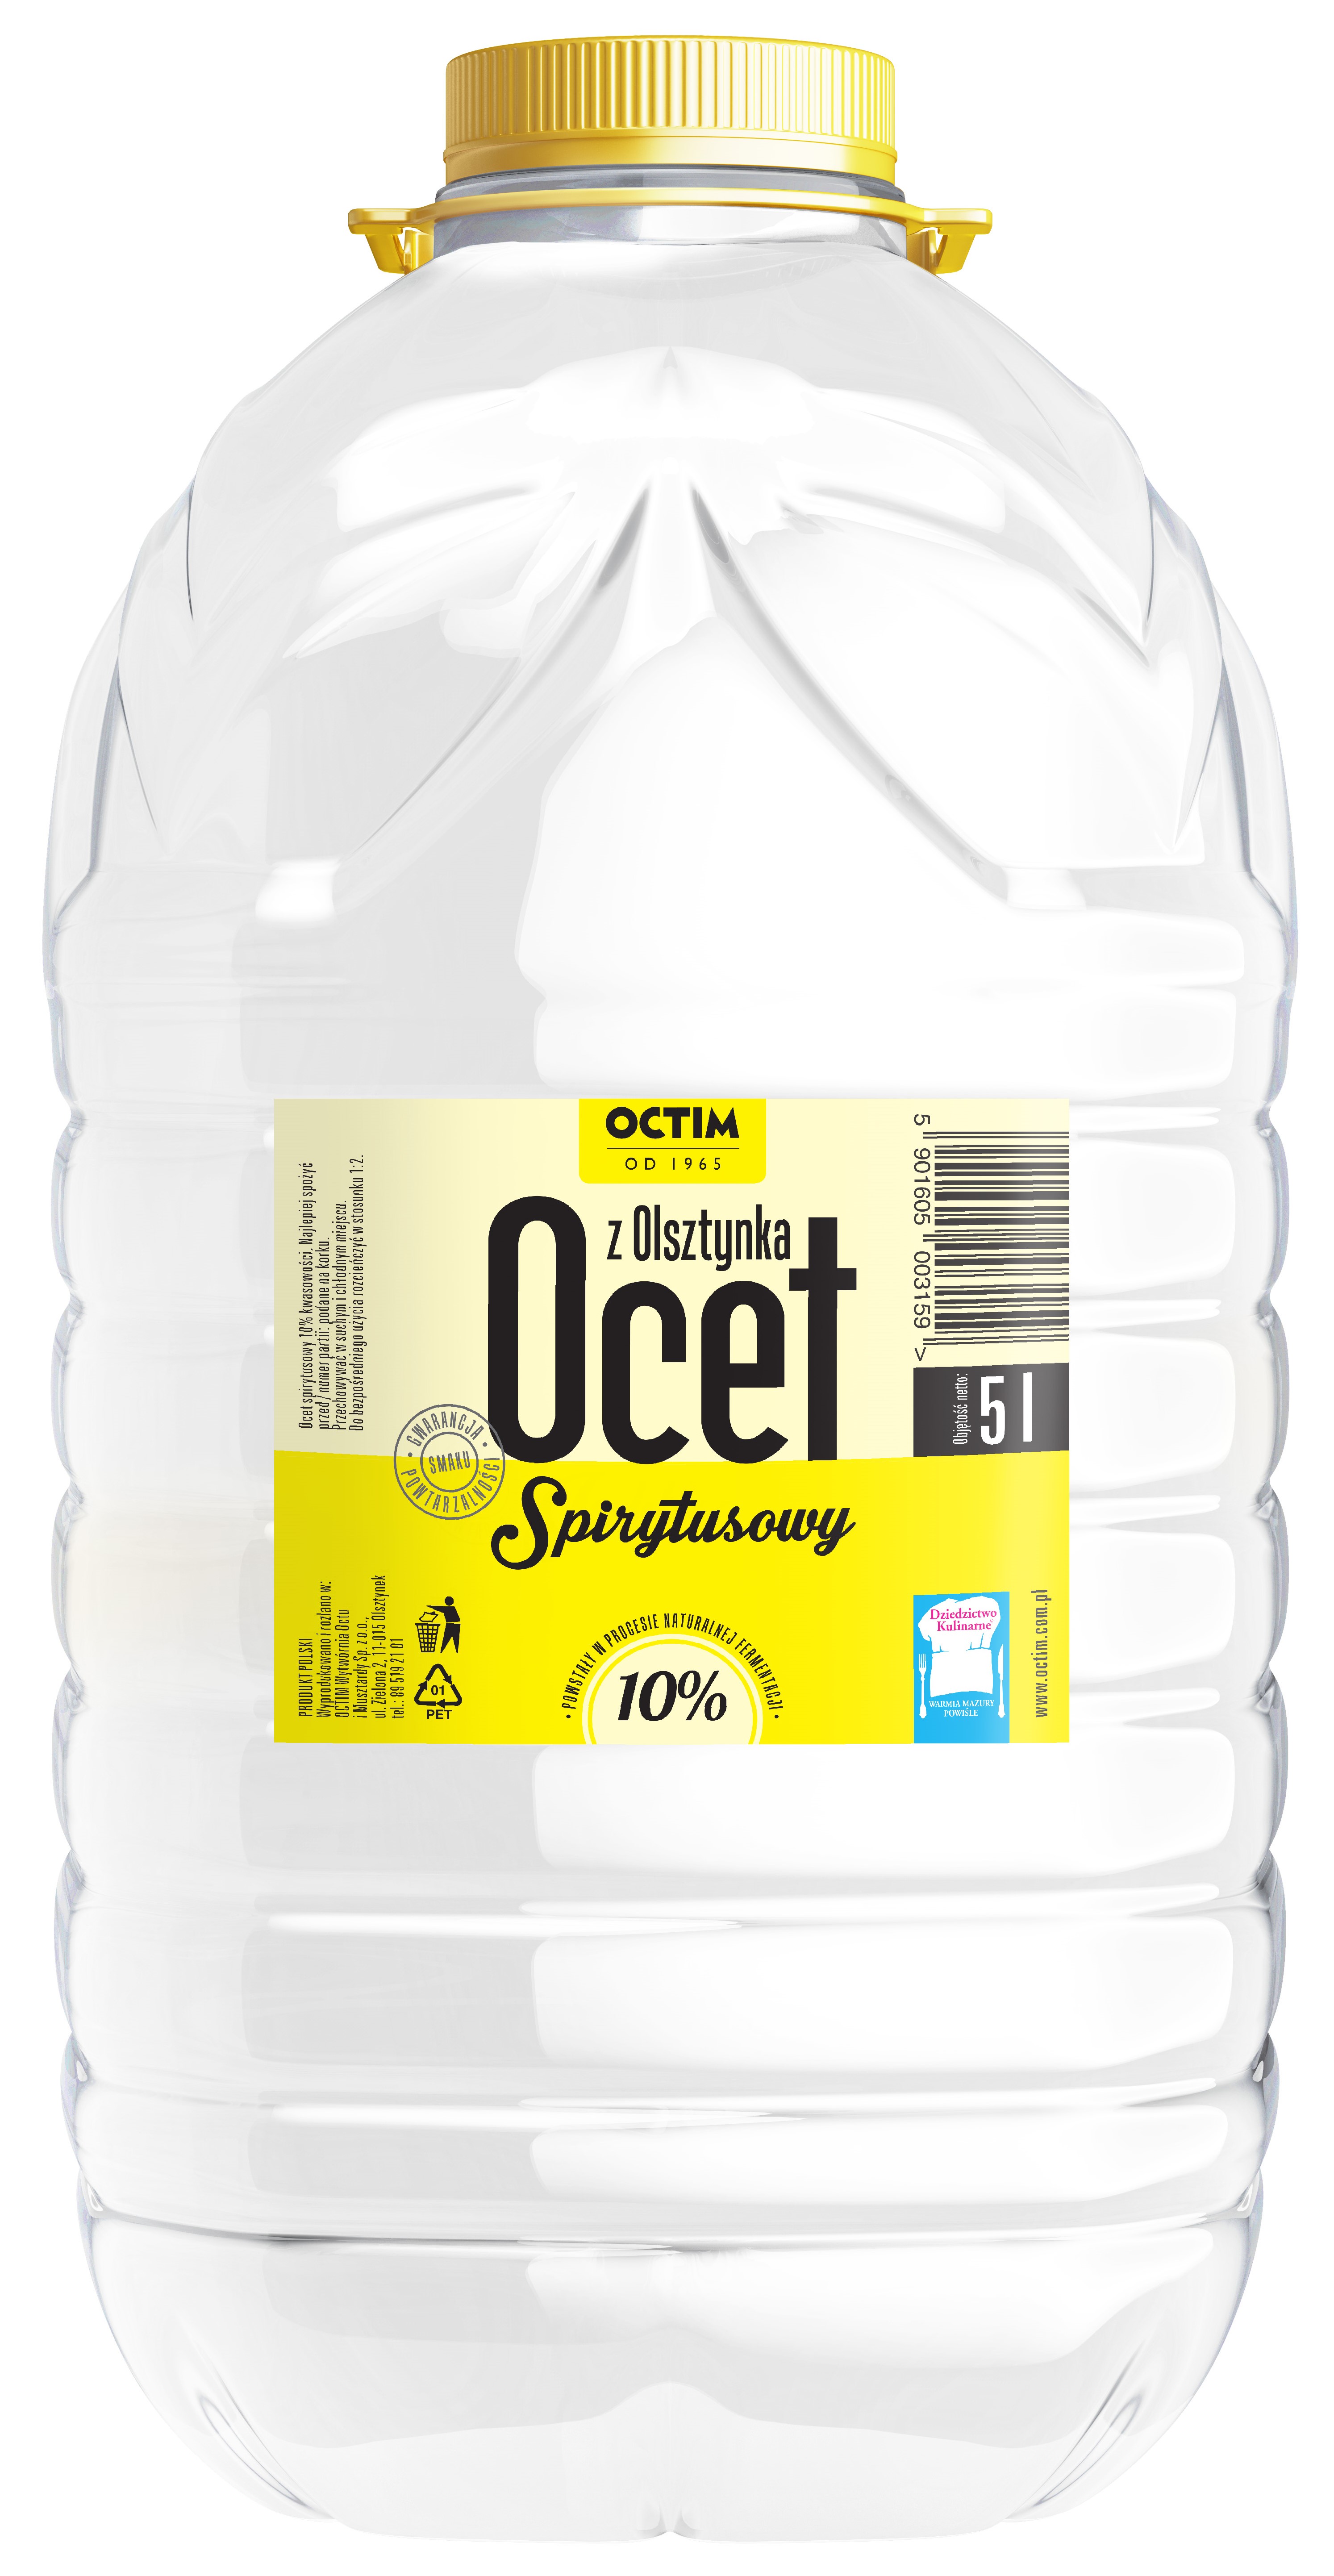 Octim spirit vinegar 10% acidity